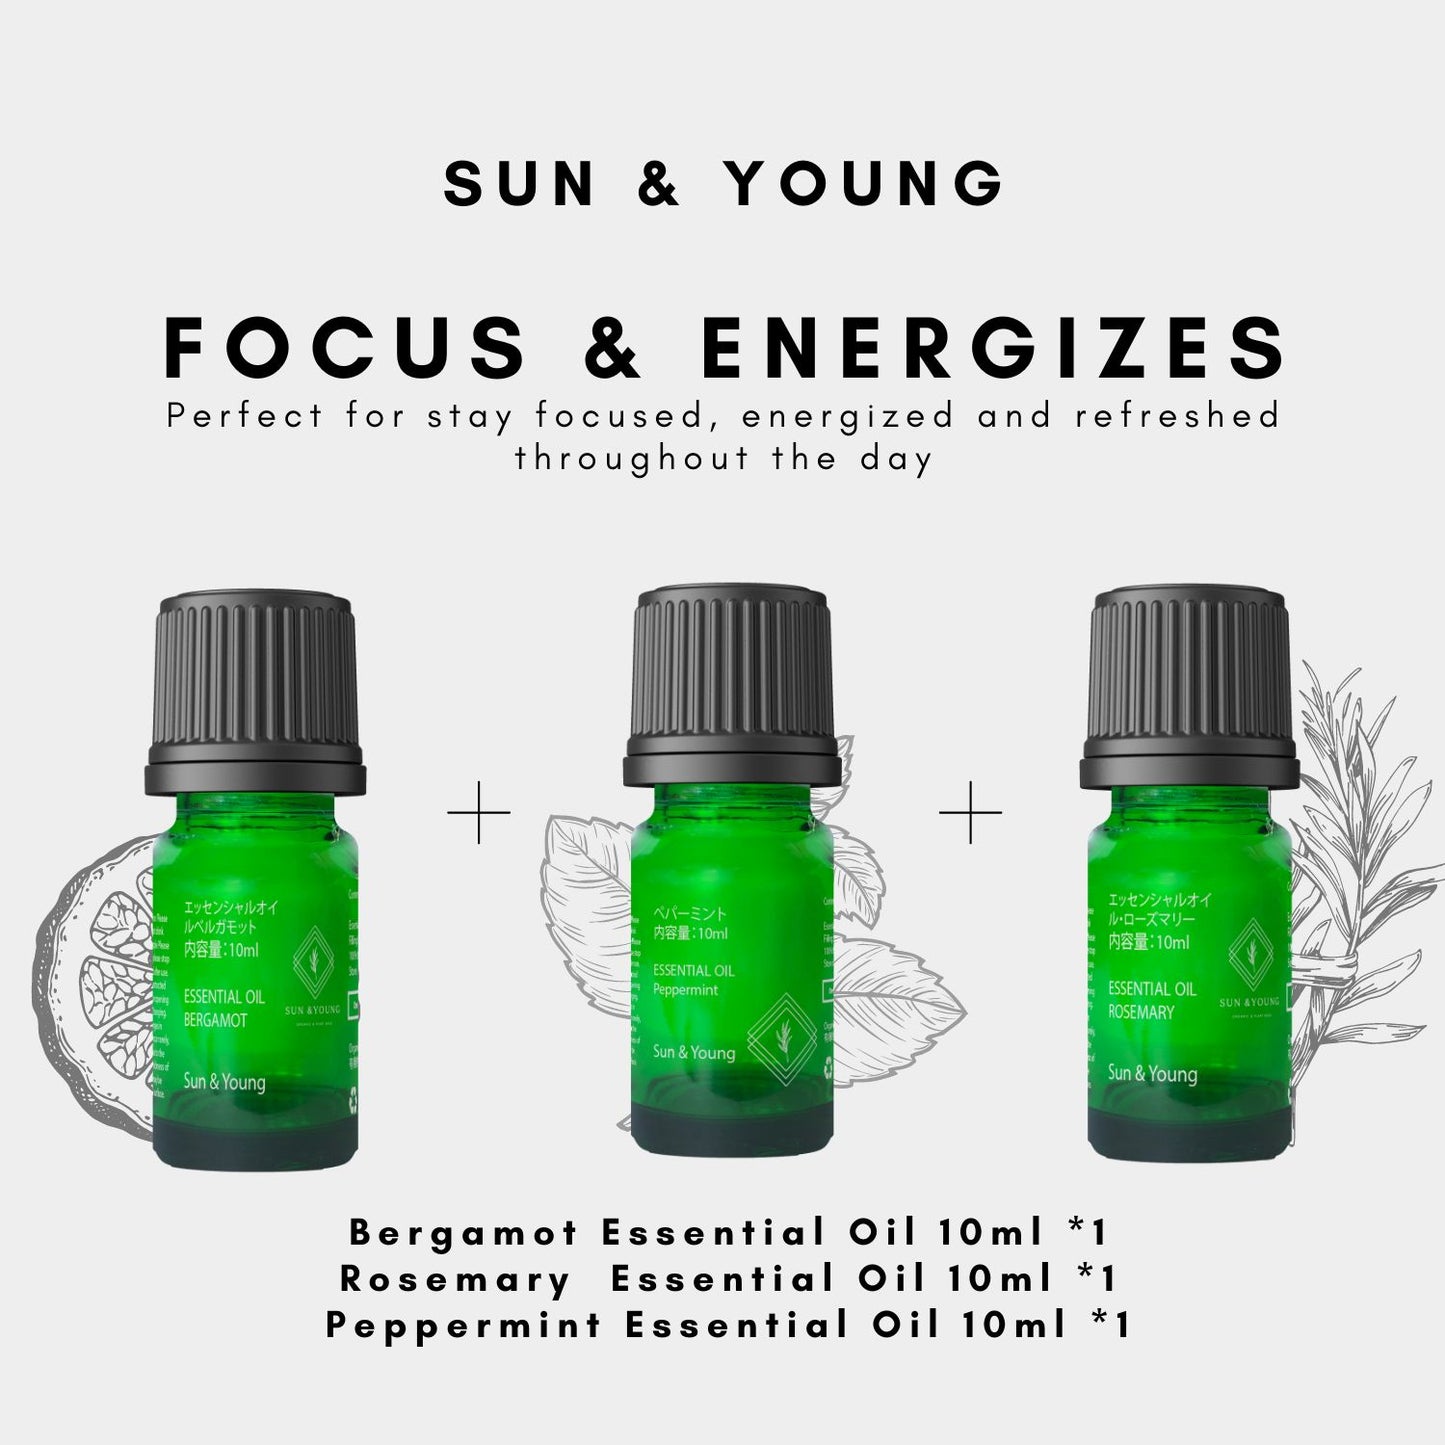 Focus & Energizes Aromatherapy Set